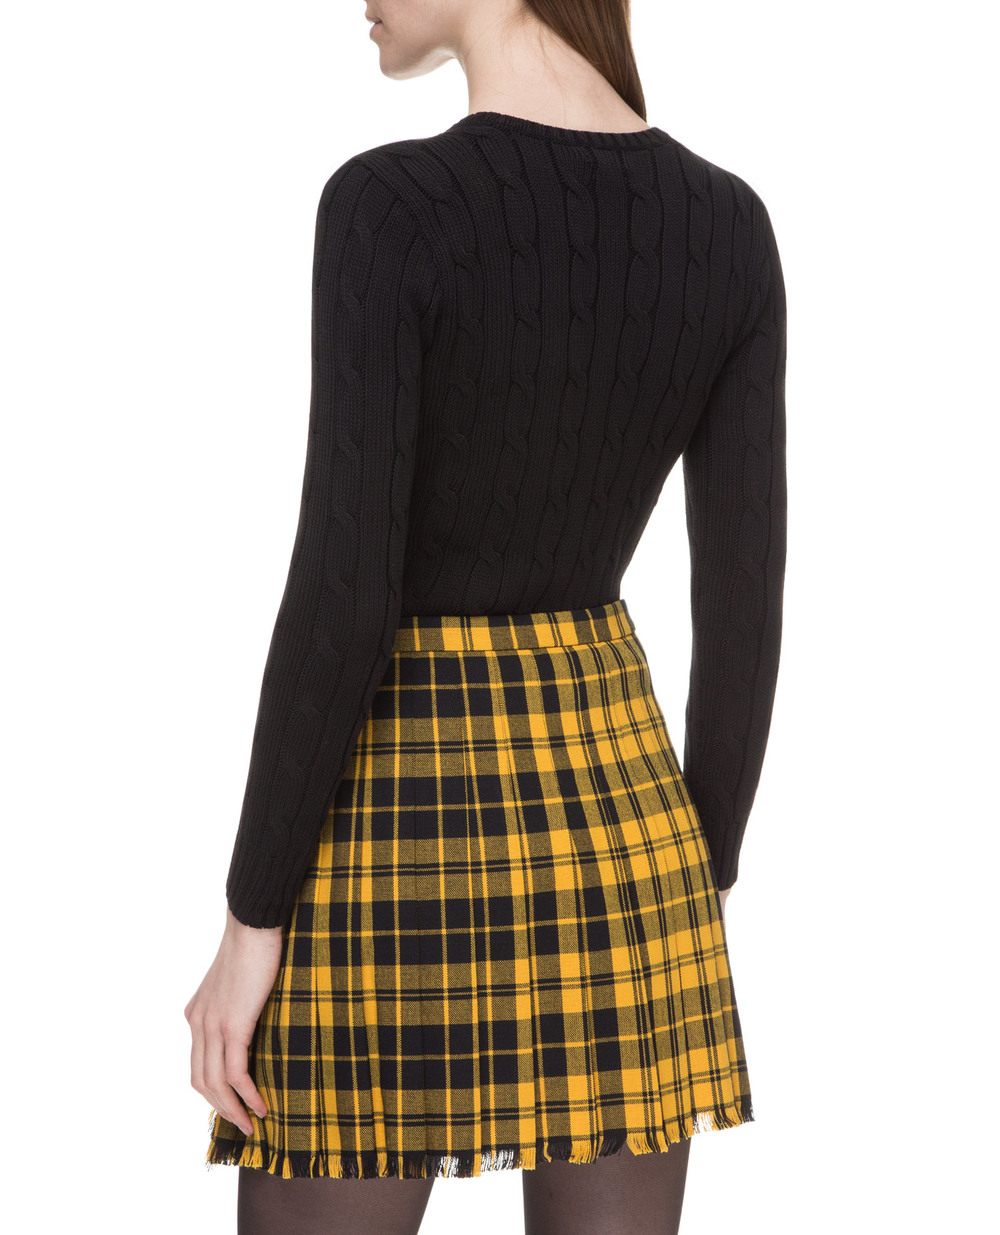 Пуловер Polo Ralph Lauren 211580008039, черный цвет • Купить в интернет-магазине Kameron